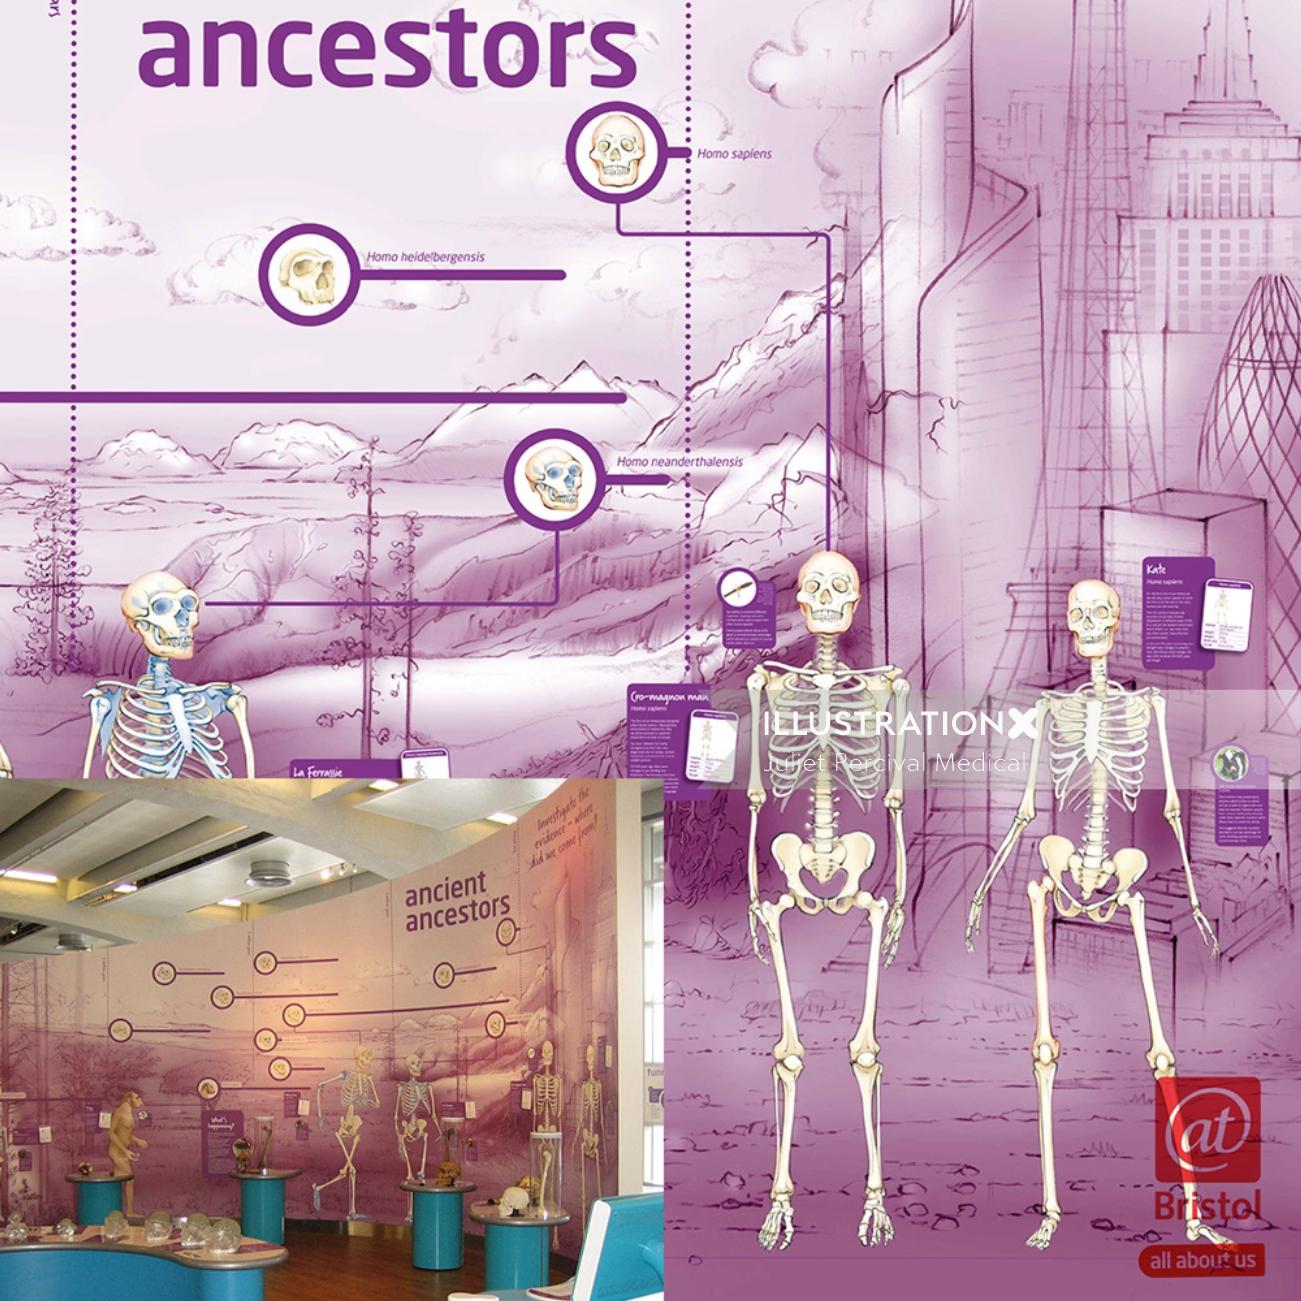 evolution, skeletons, hominids, ancestors, homus erectus, apes